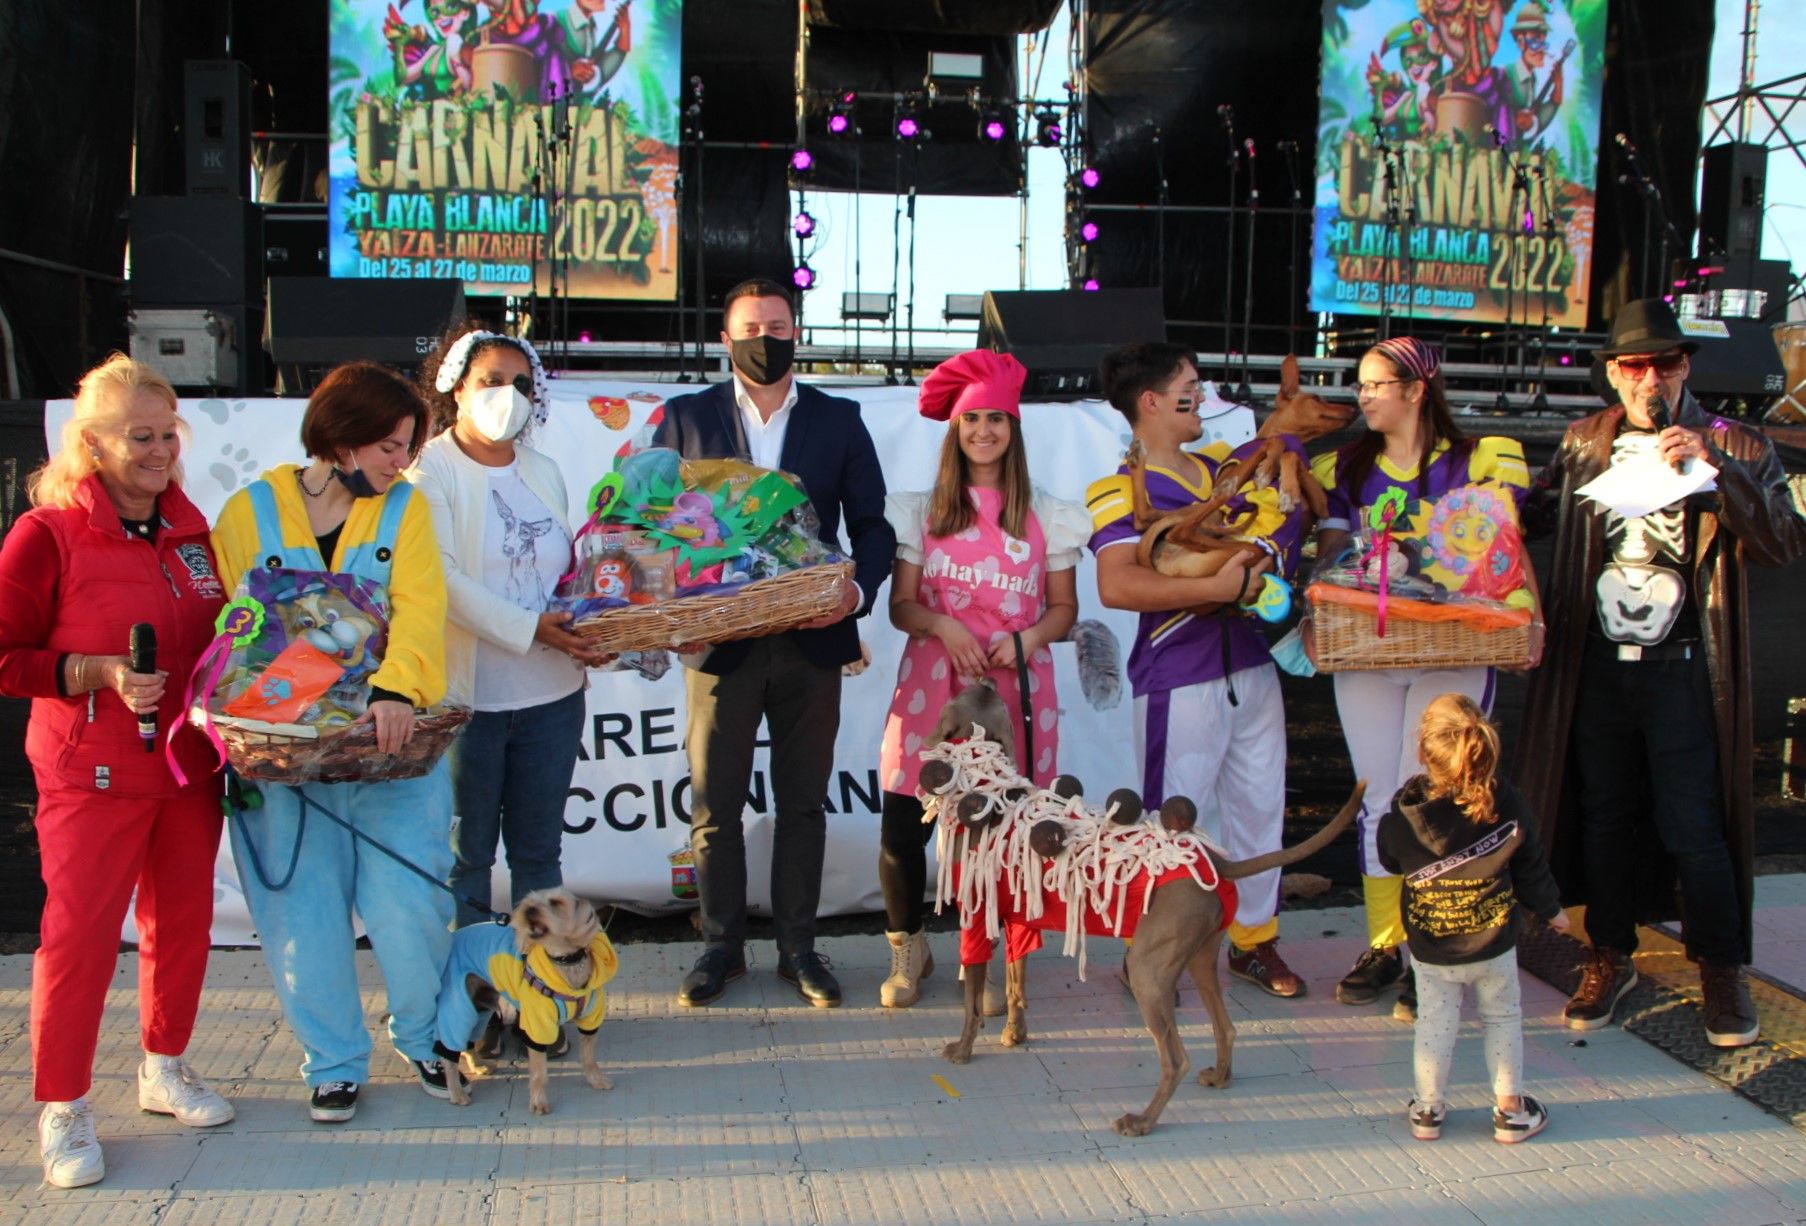 Carnaval de canino de Playa Blanca, Lanzarote